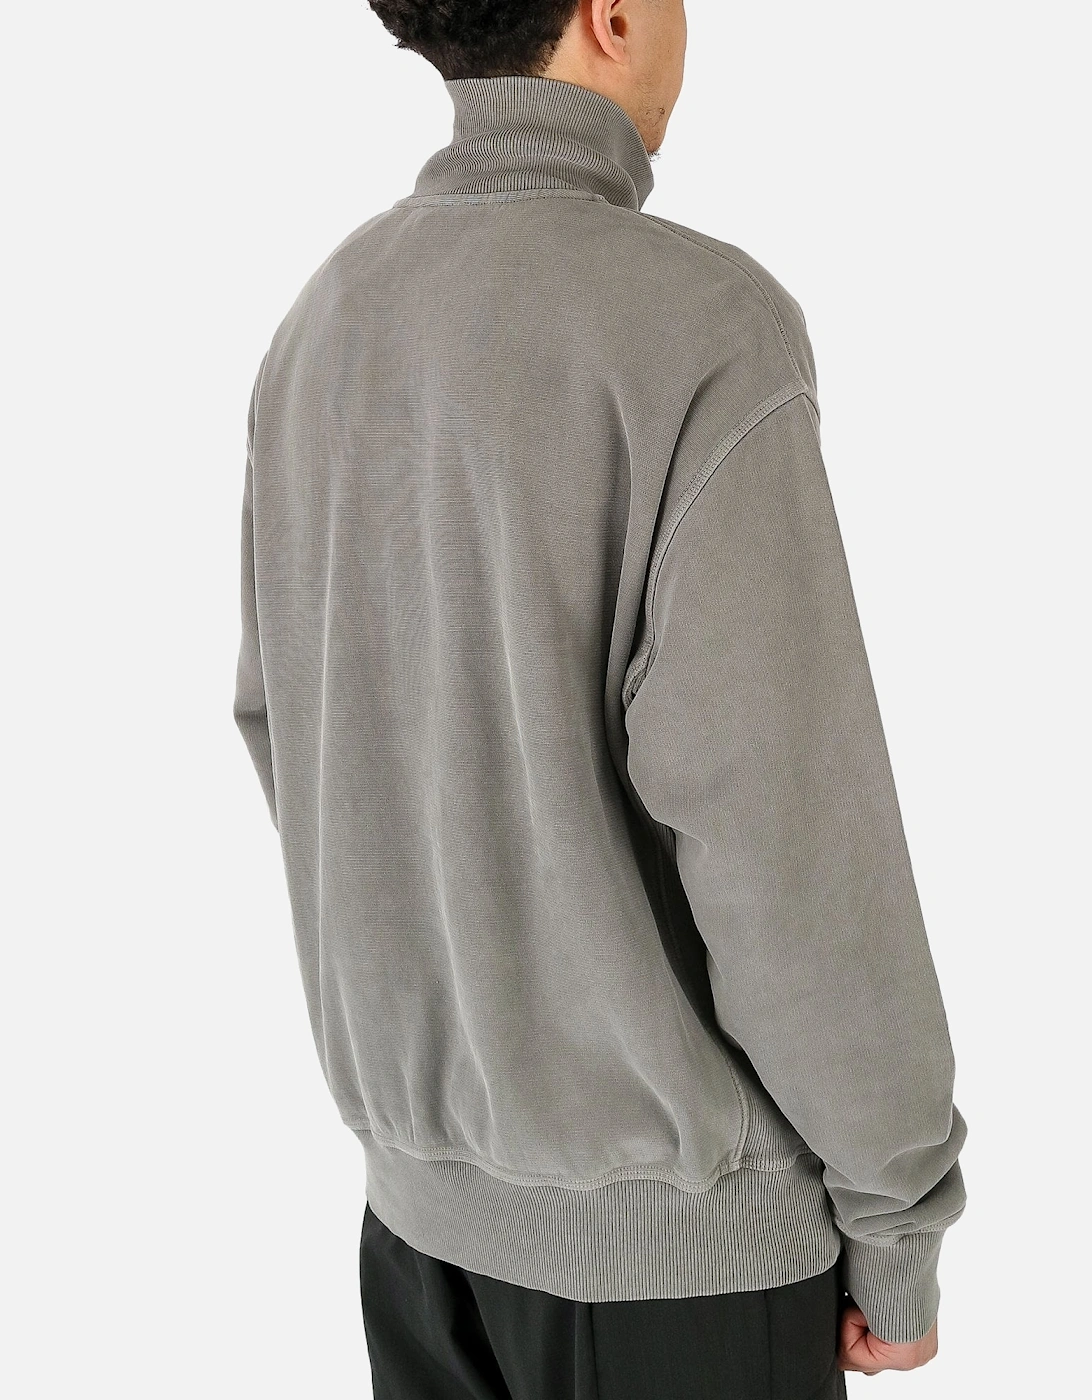 Mineral Quarter Zip Grey Sweatshirt